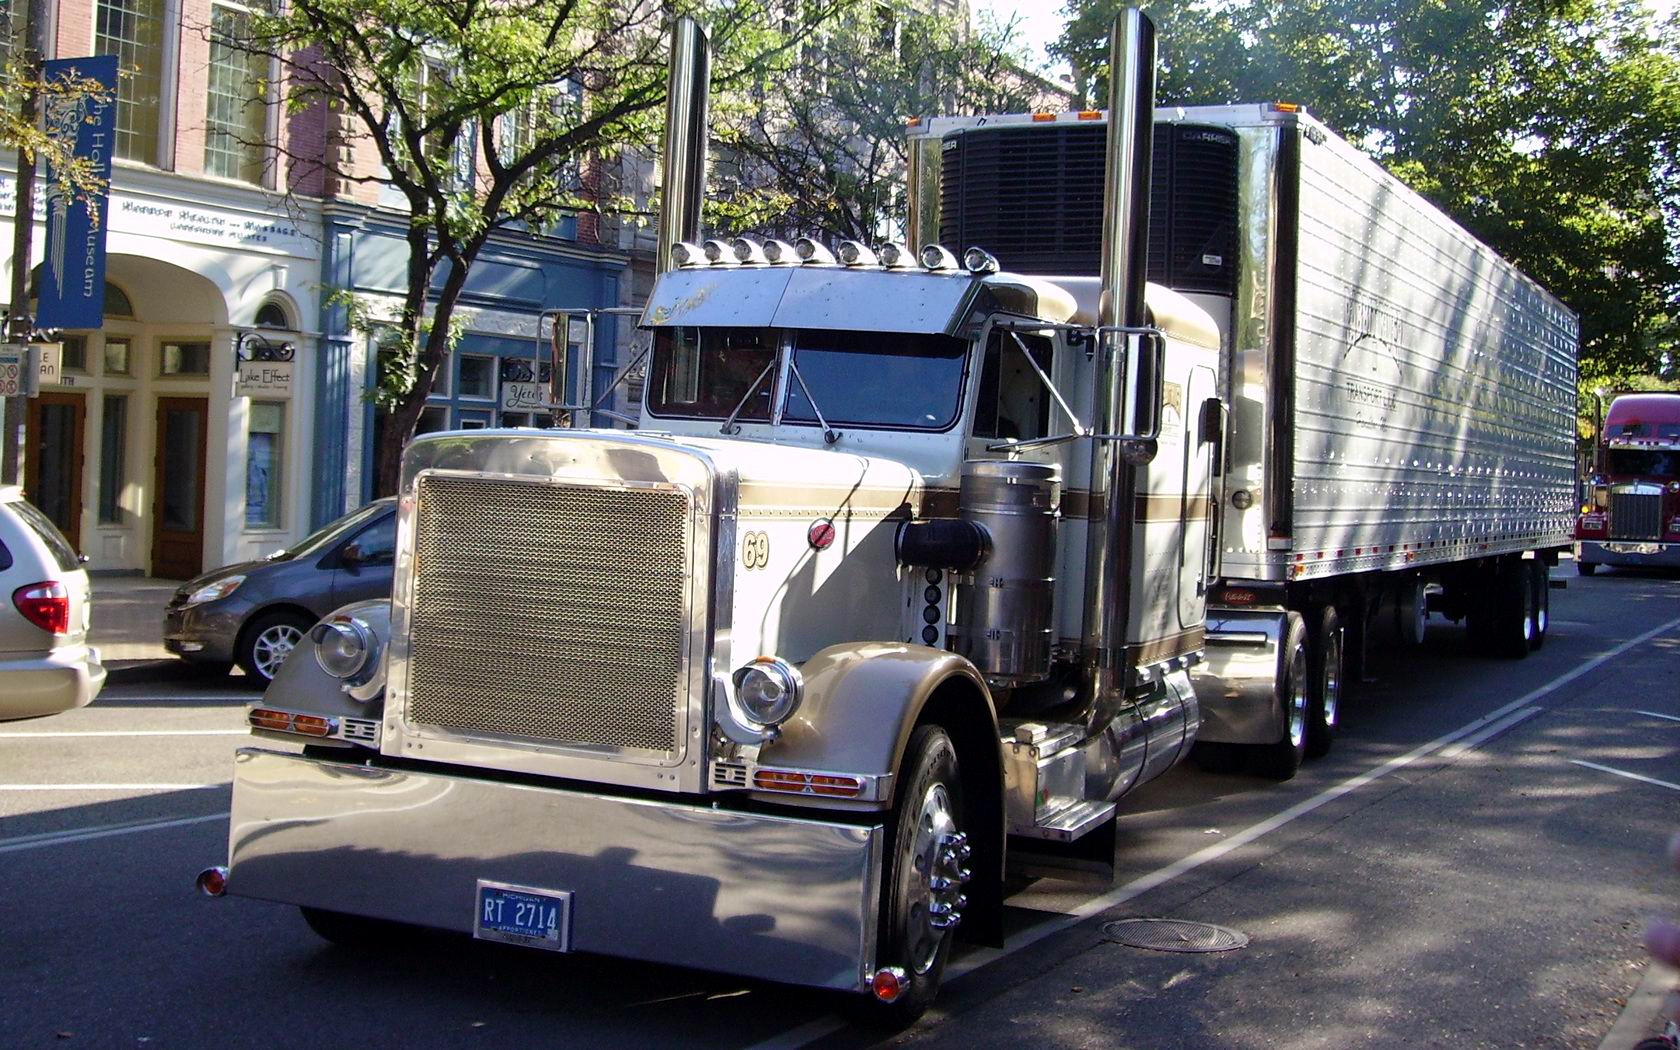 Download HQ Trucks wallpaper / Vehicles / 1680x1050